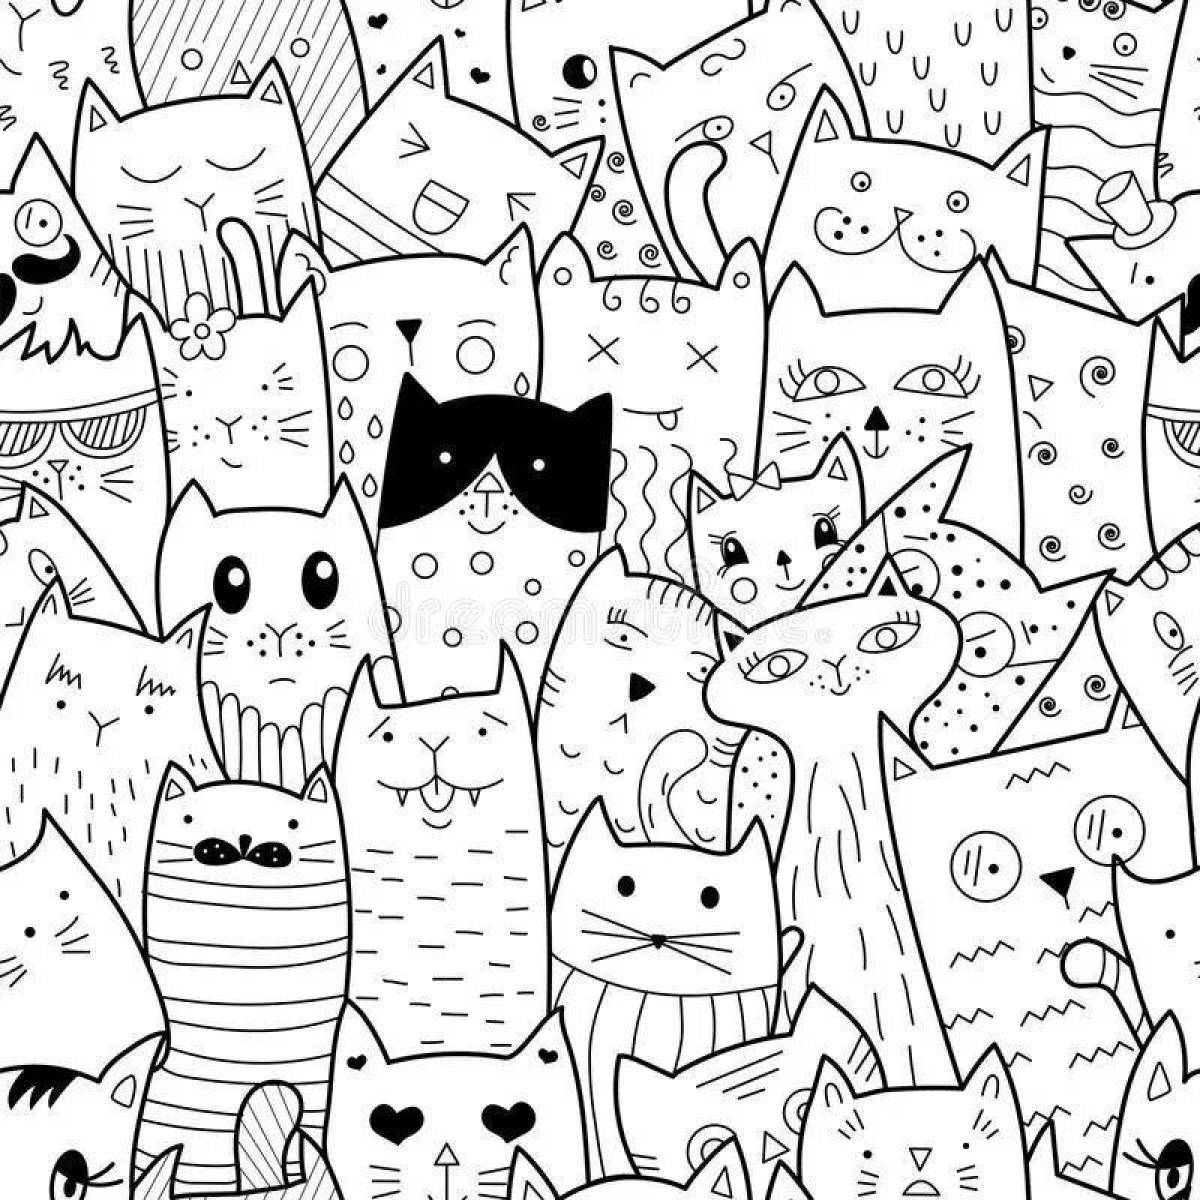 Many cats #8